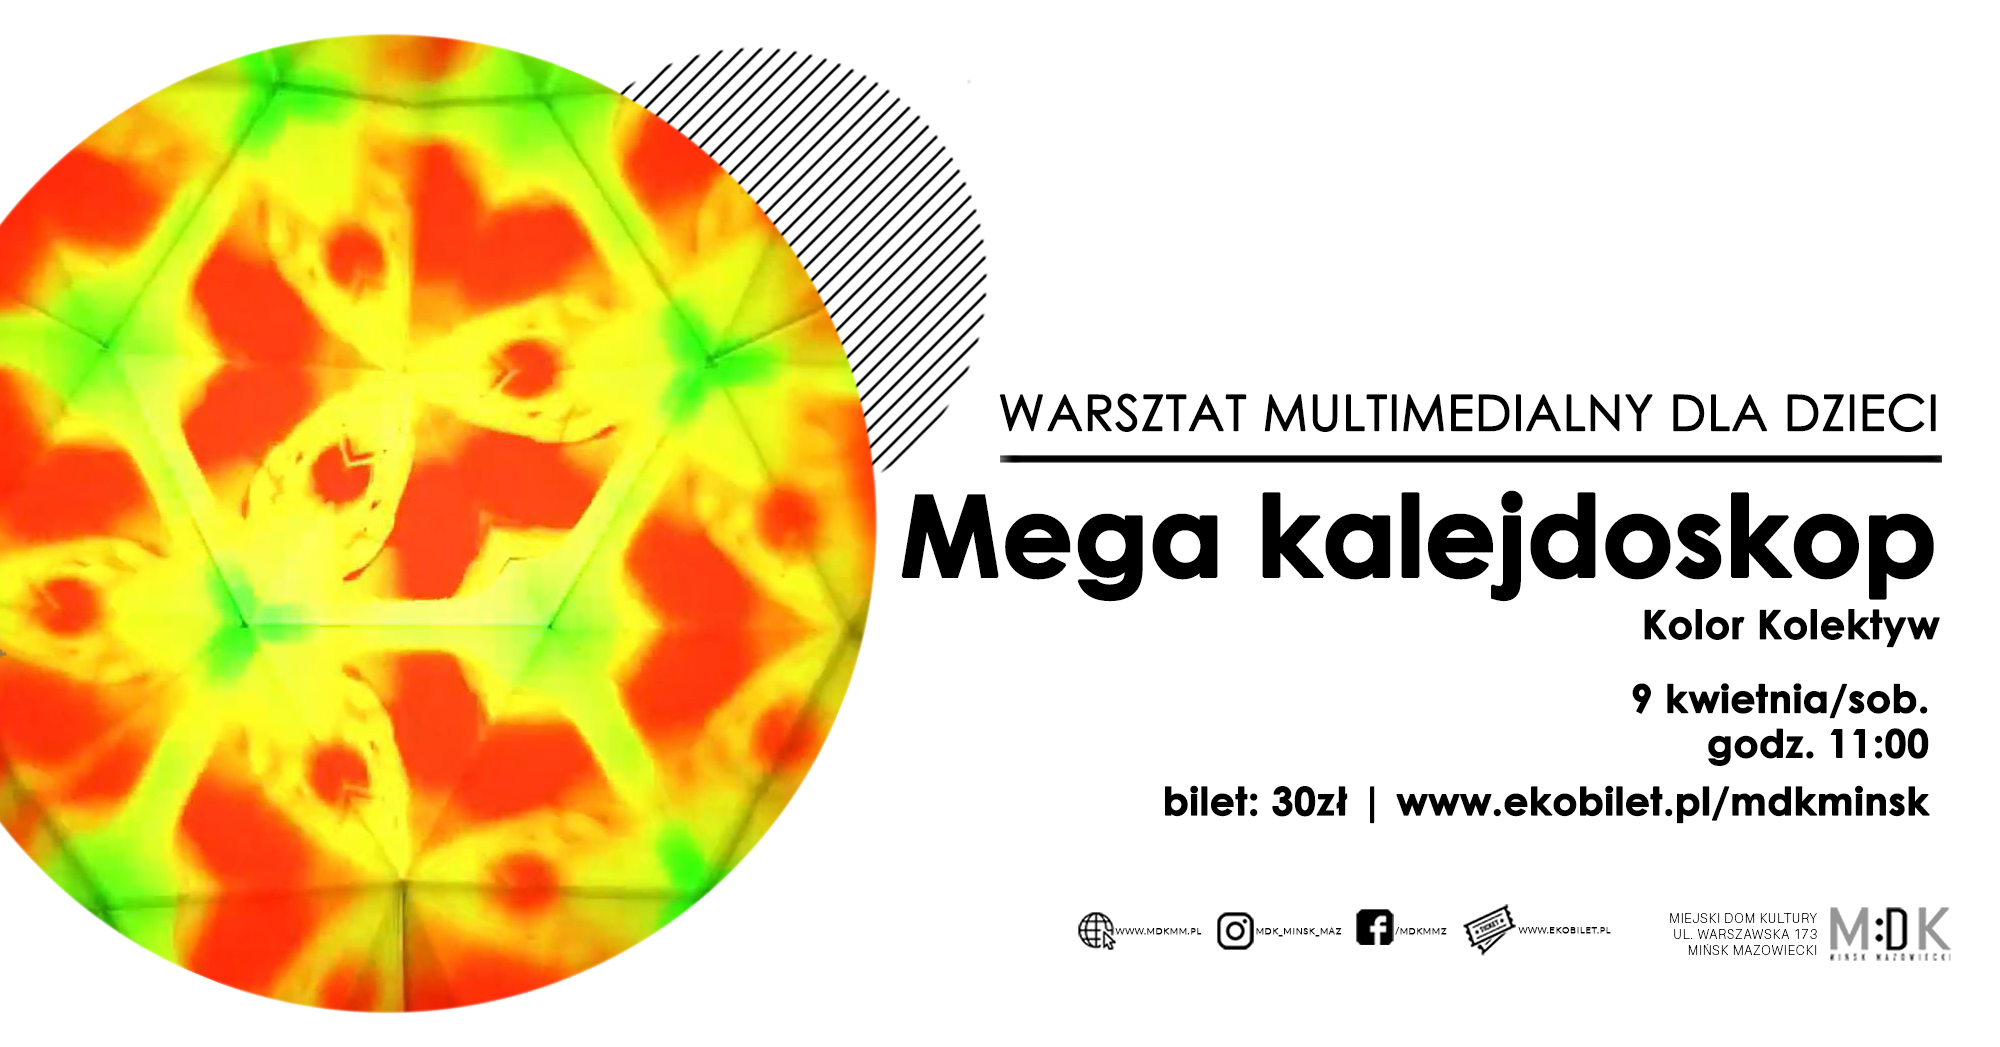 Mega kalejdoskop | warsztat multimedialny dla dzieci